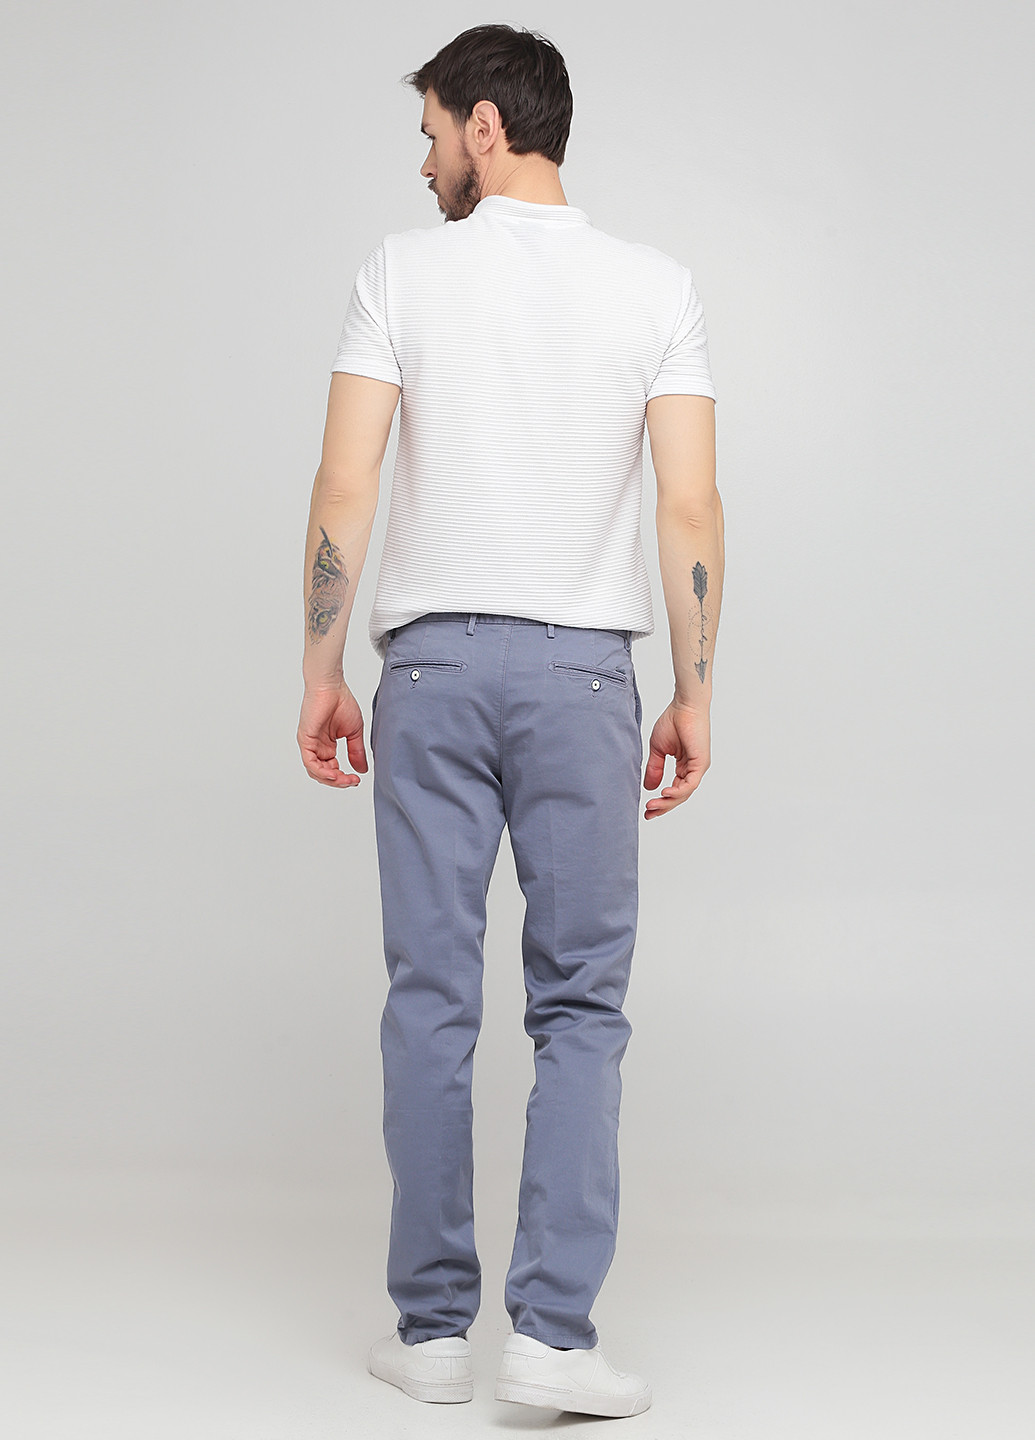 Голубые кэжуал демисезонные чиносы брюки Massimo Dutti